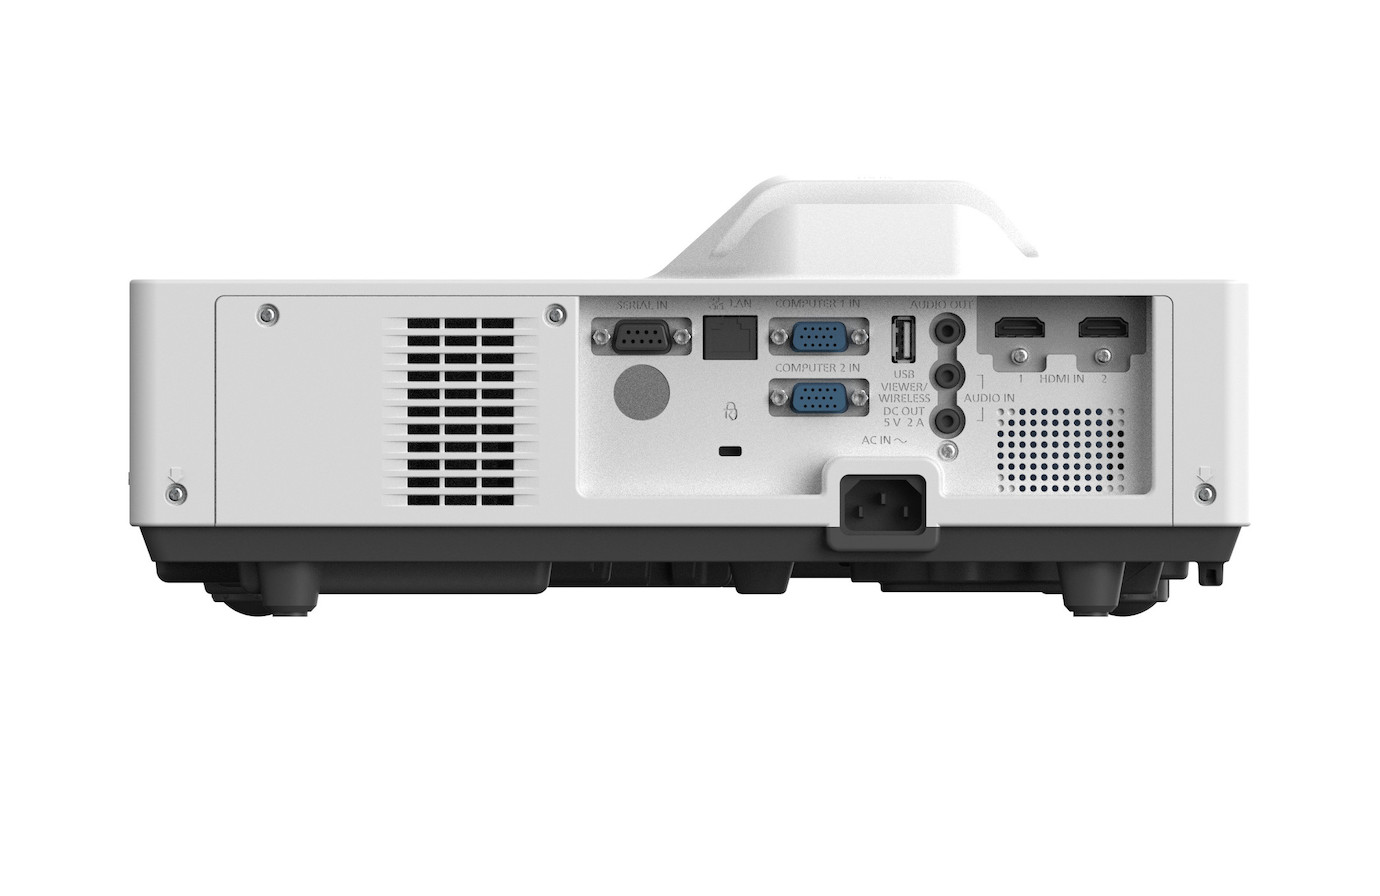 Vorschau: Panasonic PT-TMZ400, Beamer, Laser-Kurzdistanz Beamer mit WUXGA und 4000 ANSI-Lumen - Demo